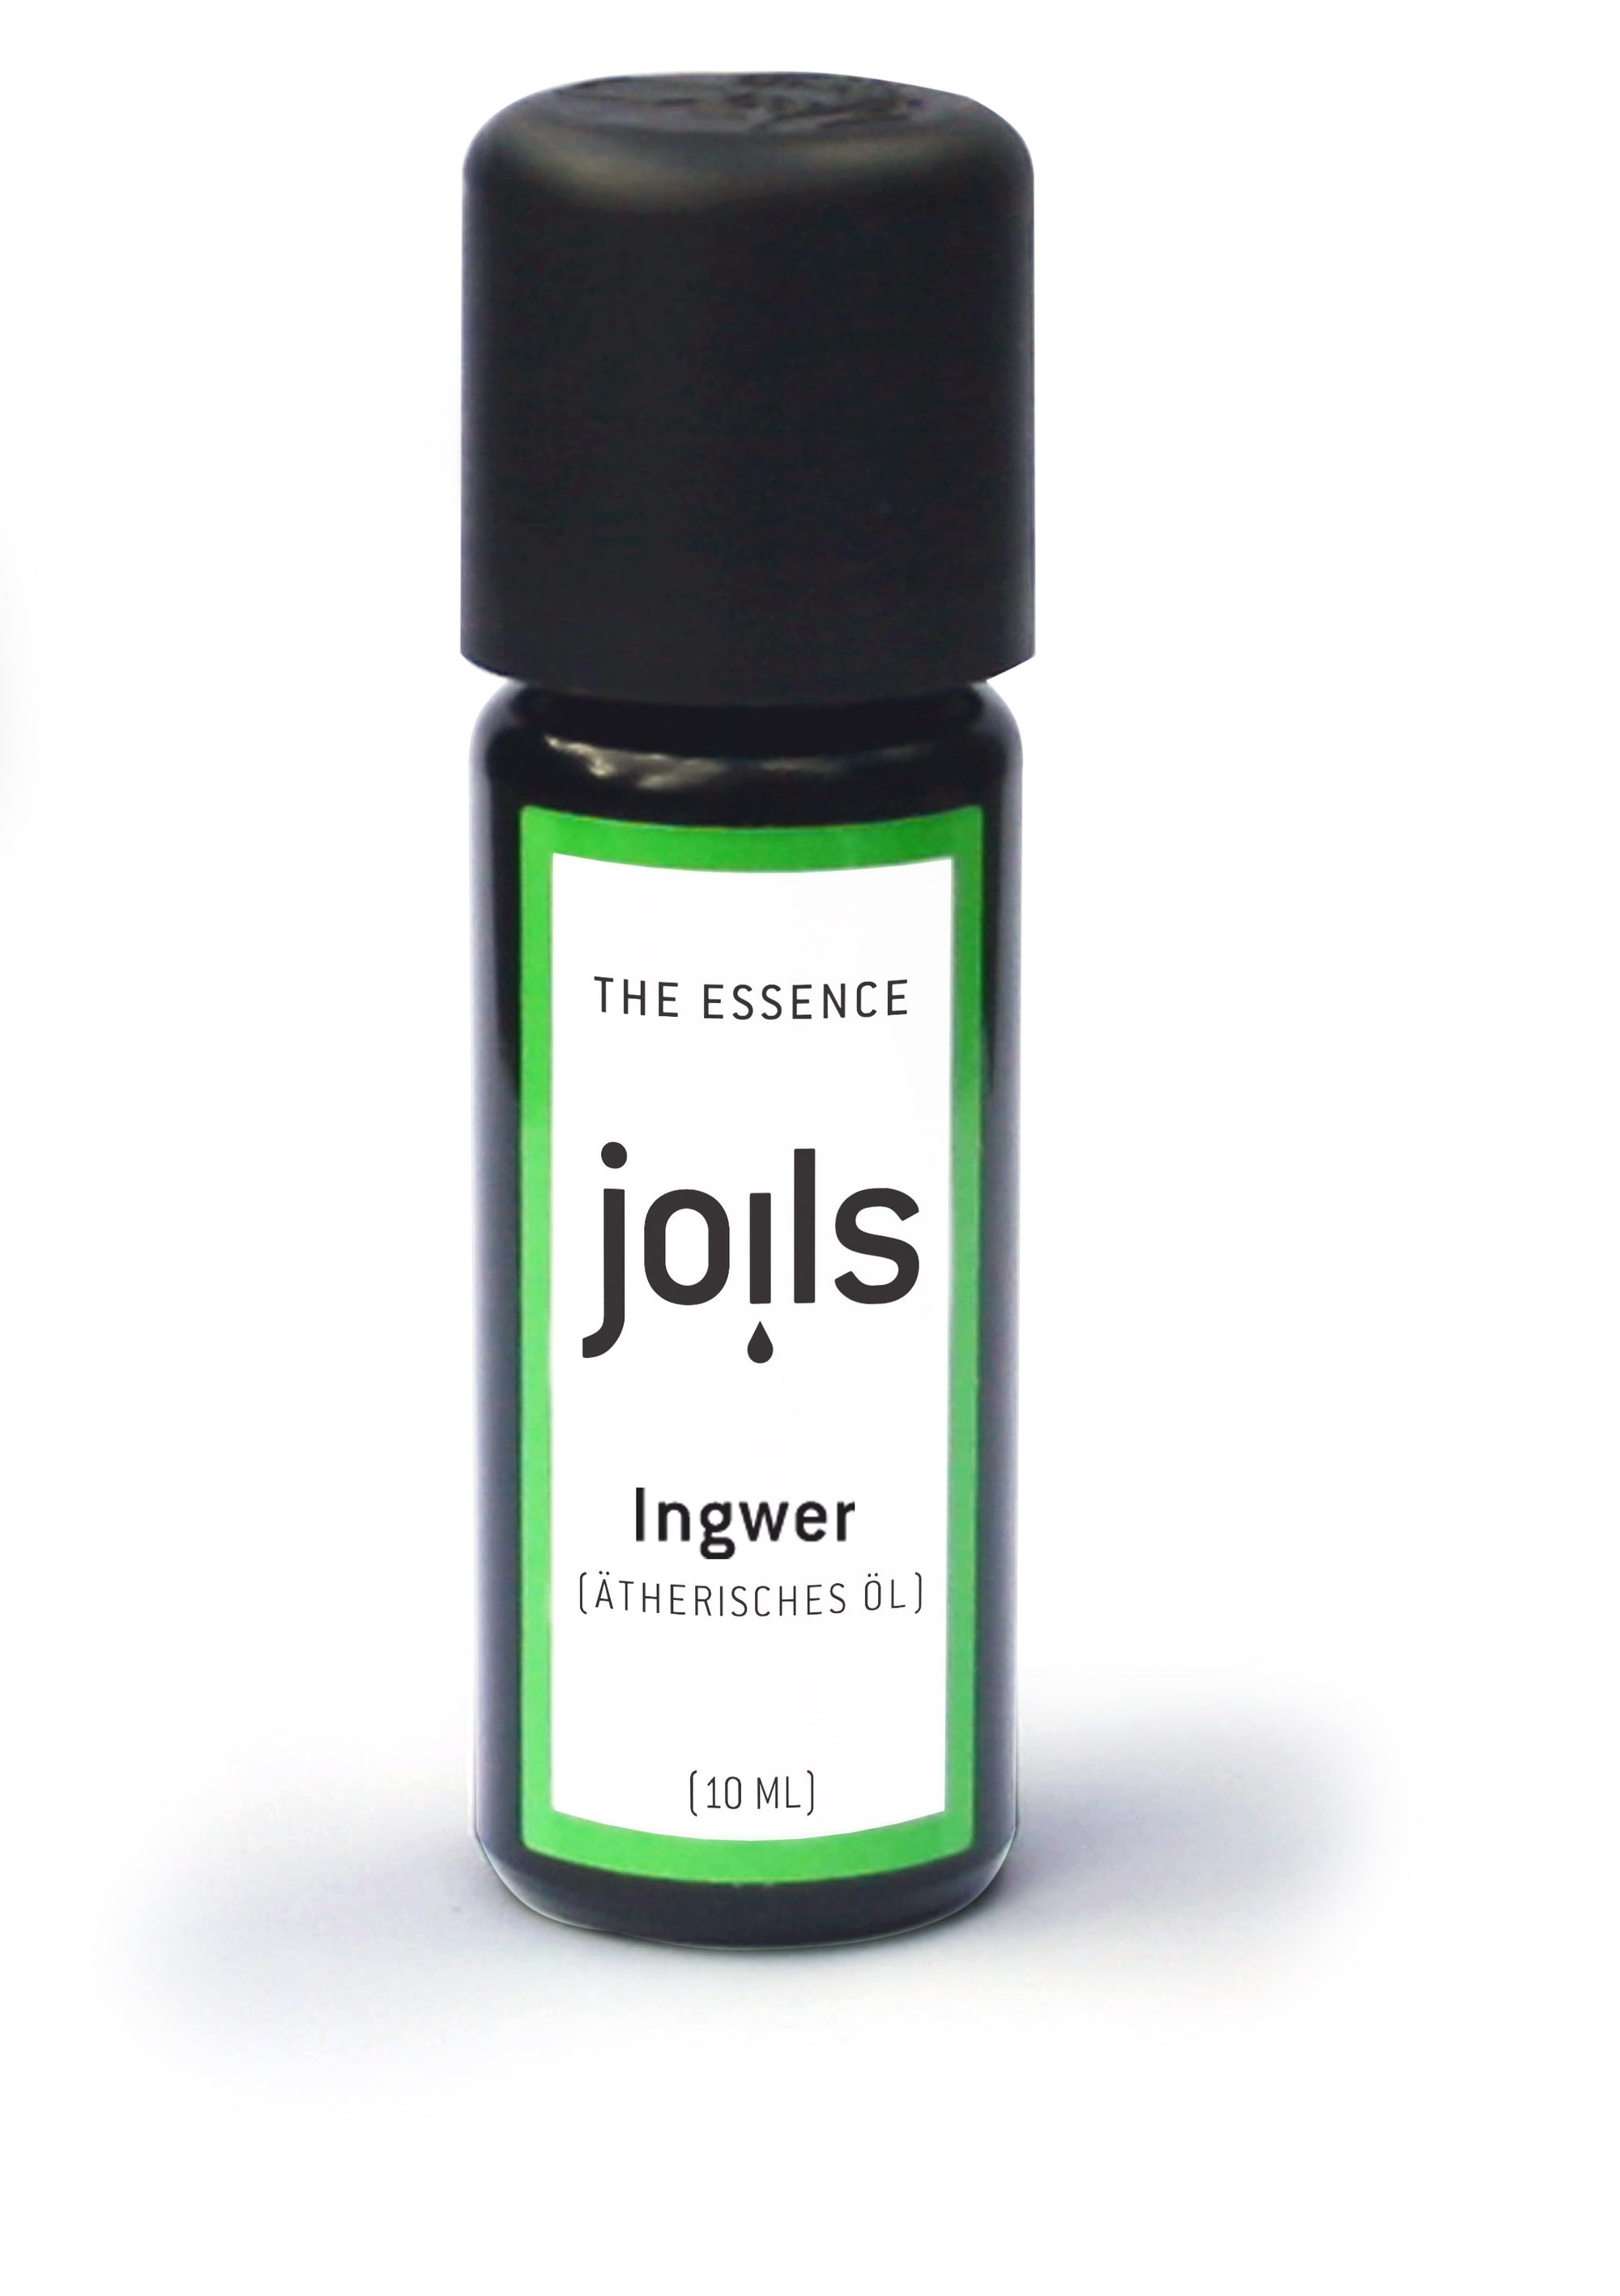 INGWER 10ml - Joils